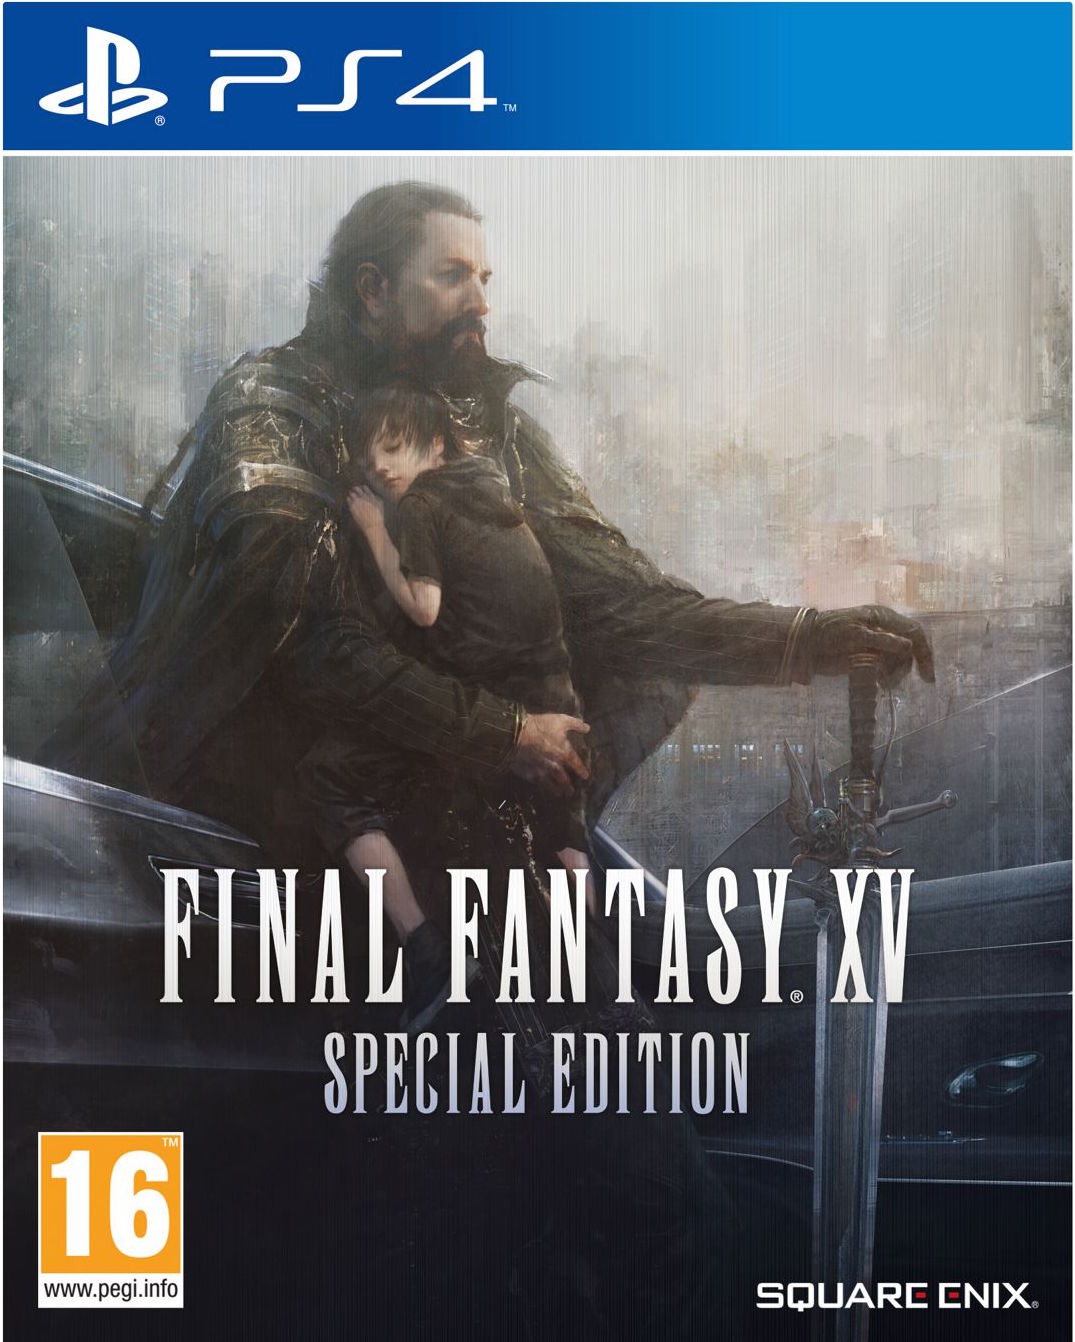 Final Fantasy XV Special Edition (PS4), Square Enix